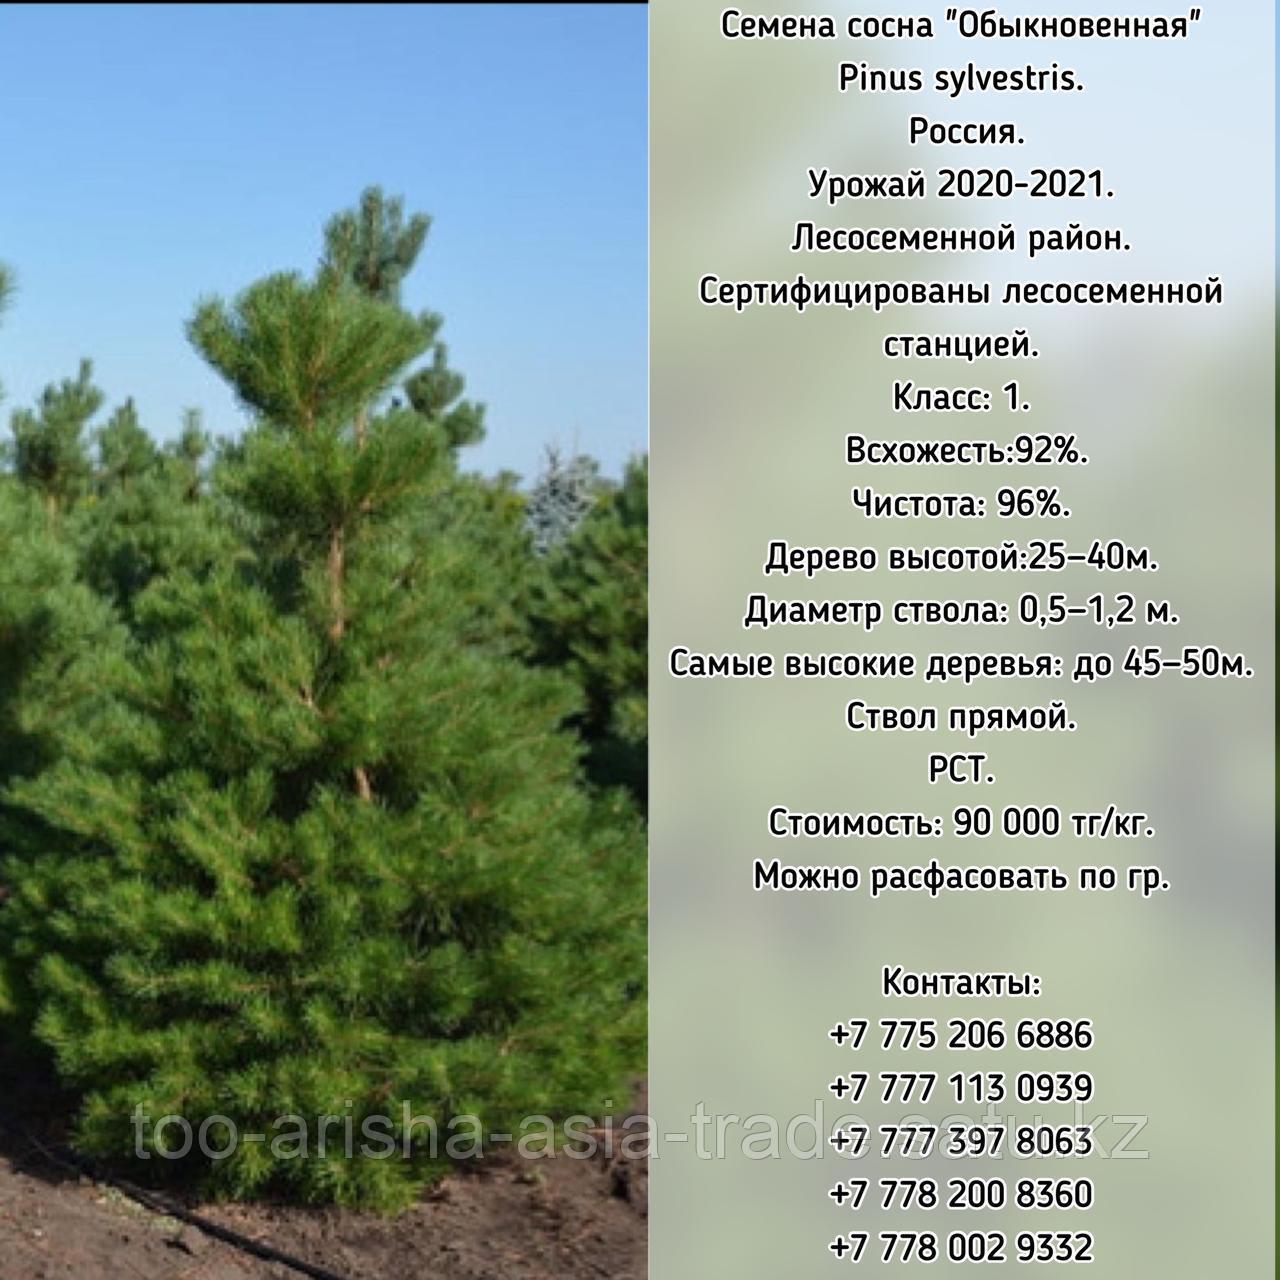 Семена сосна "Обыкновенная" (Pinus sylvestris)   ЭС  Россия